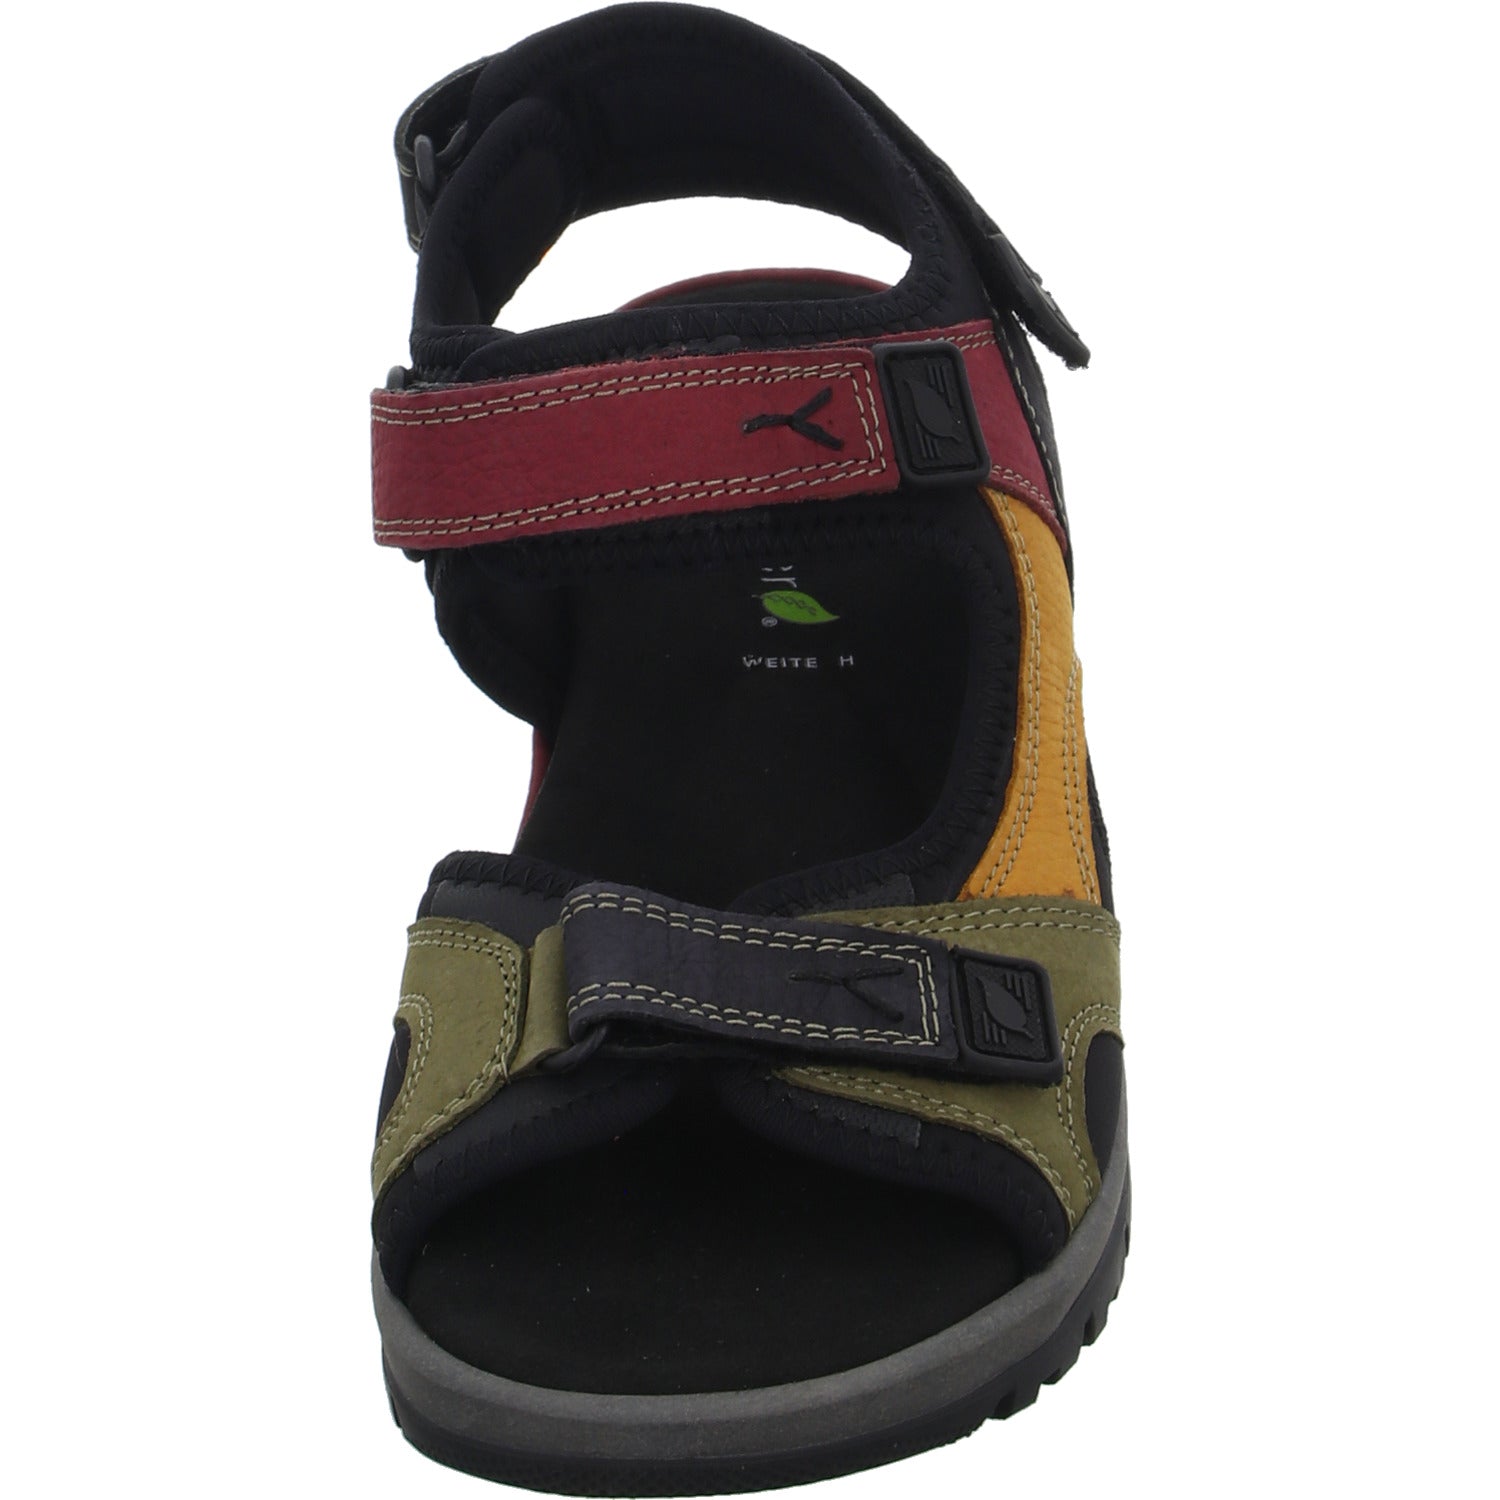 Waldläufer Sandalette mit Mehrweite bis 30mm Sohlenhöhe H-Sora